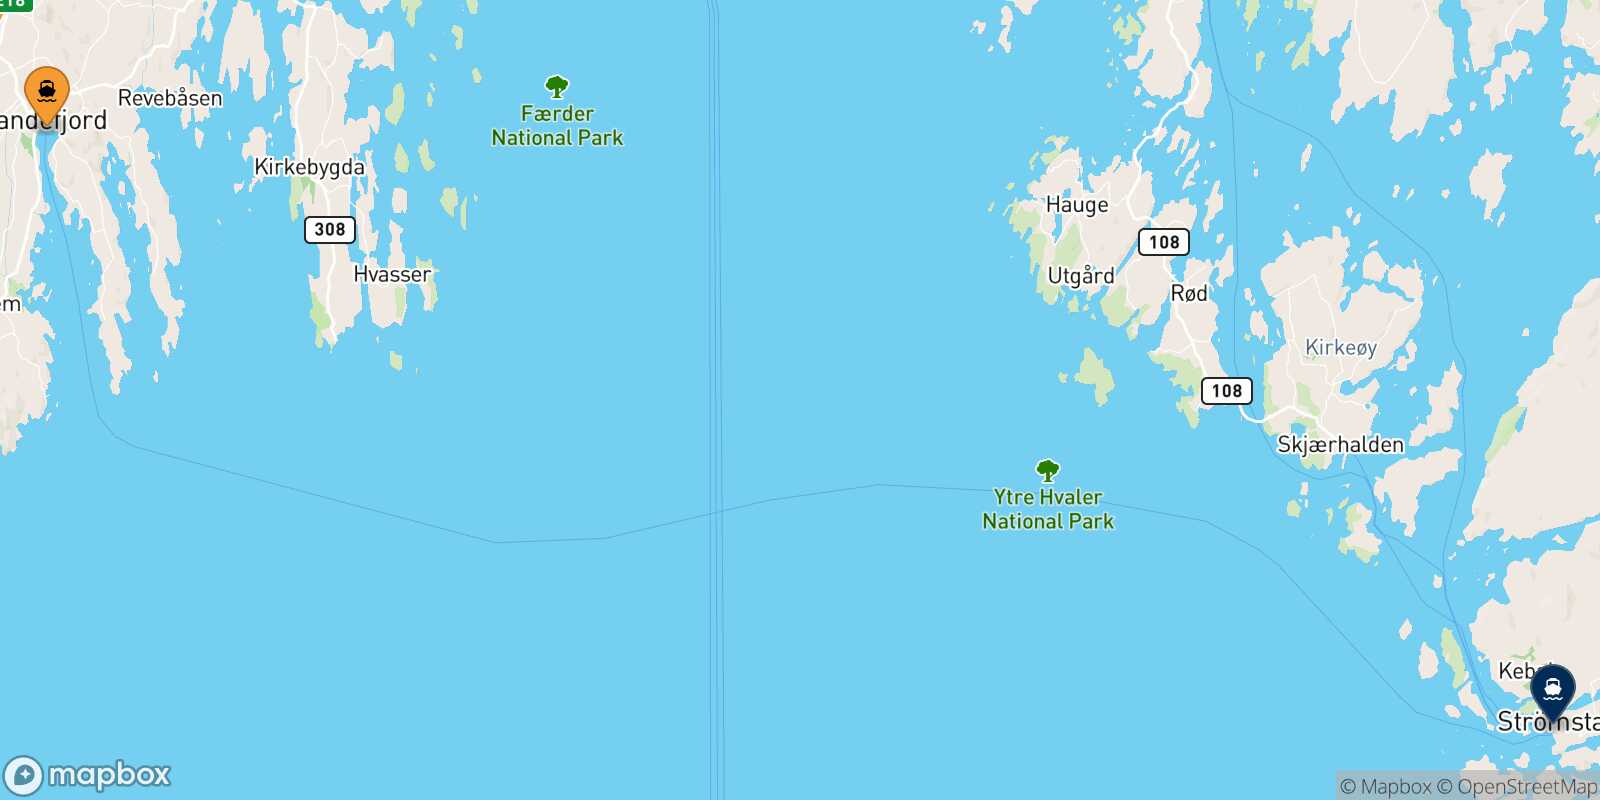 Mappa delle destinazioni raggiungibili da Sandefjord